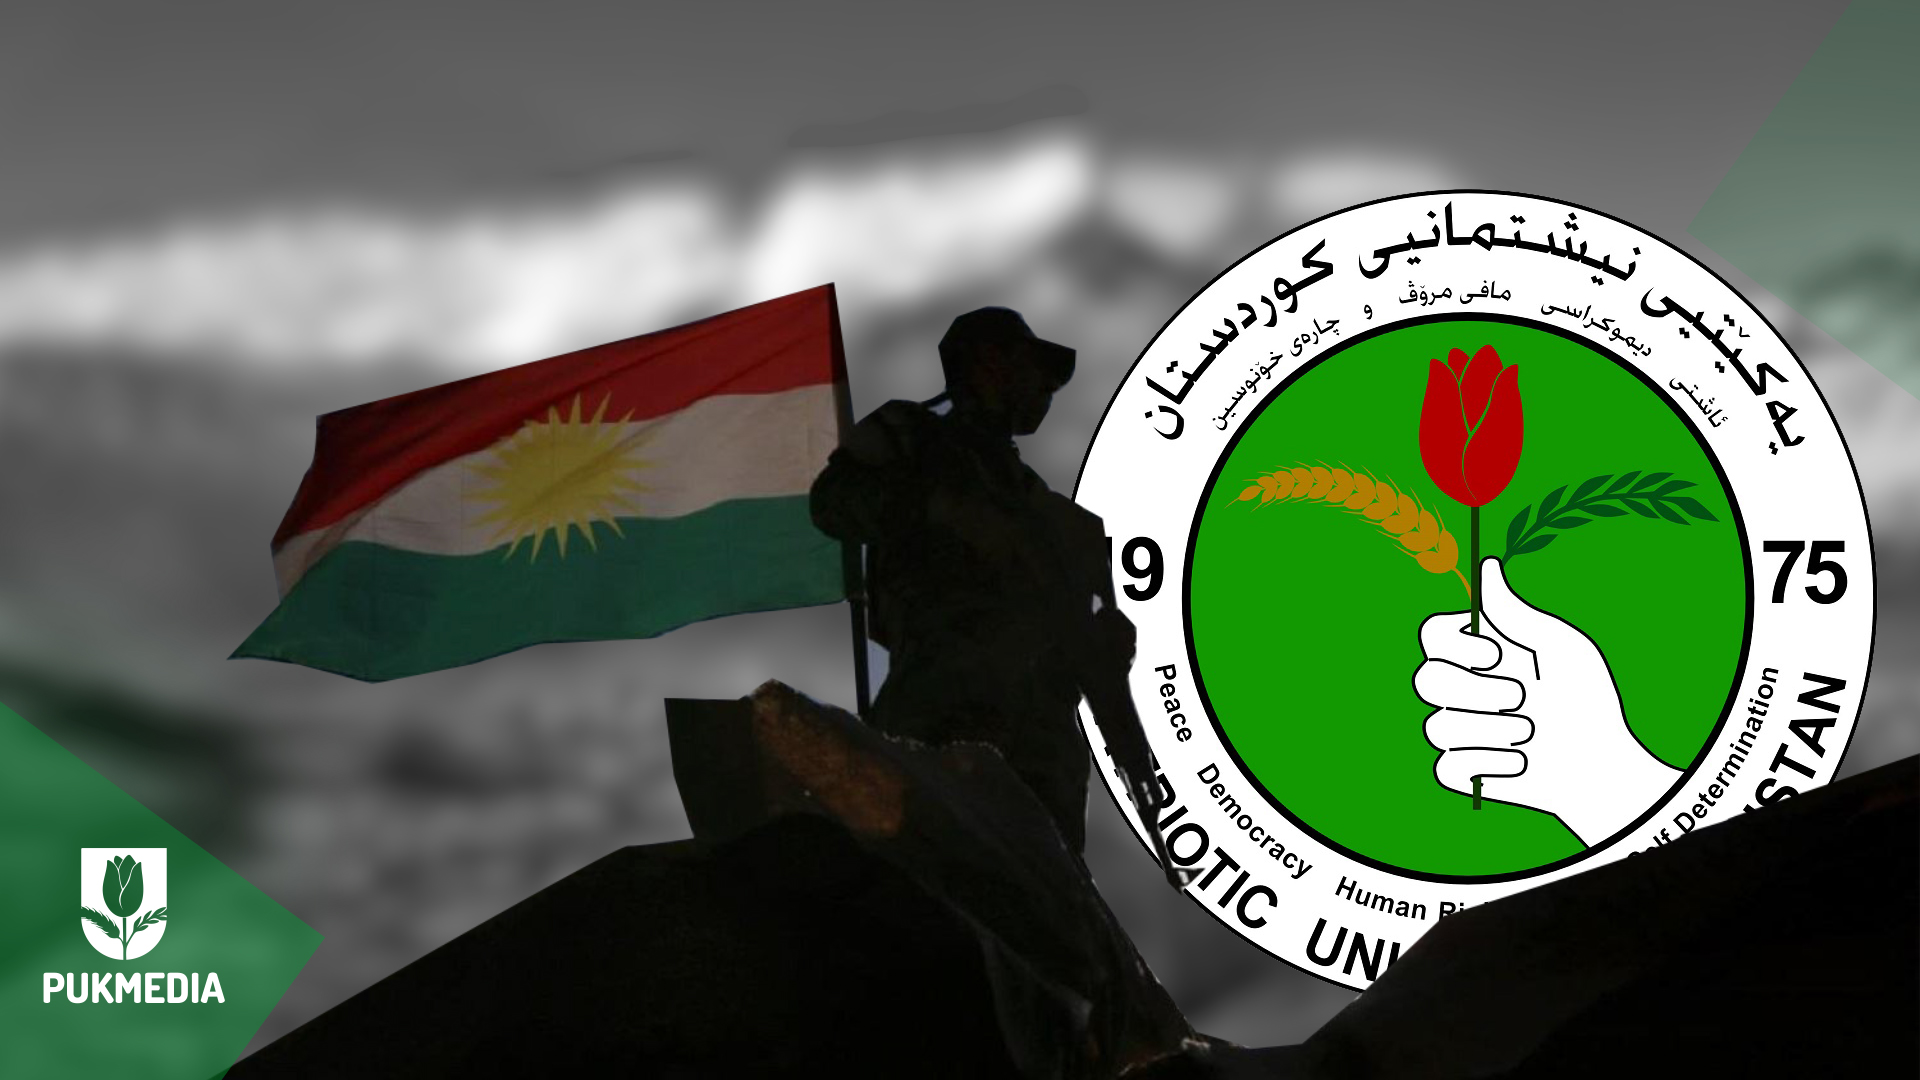  A Peshmerga, Kurdistan flag, and PUK logo.